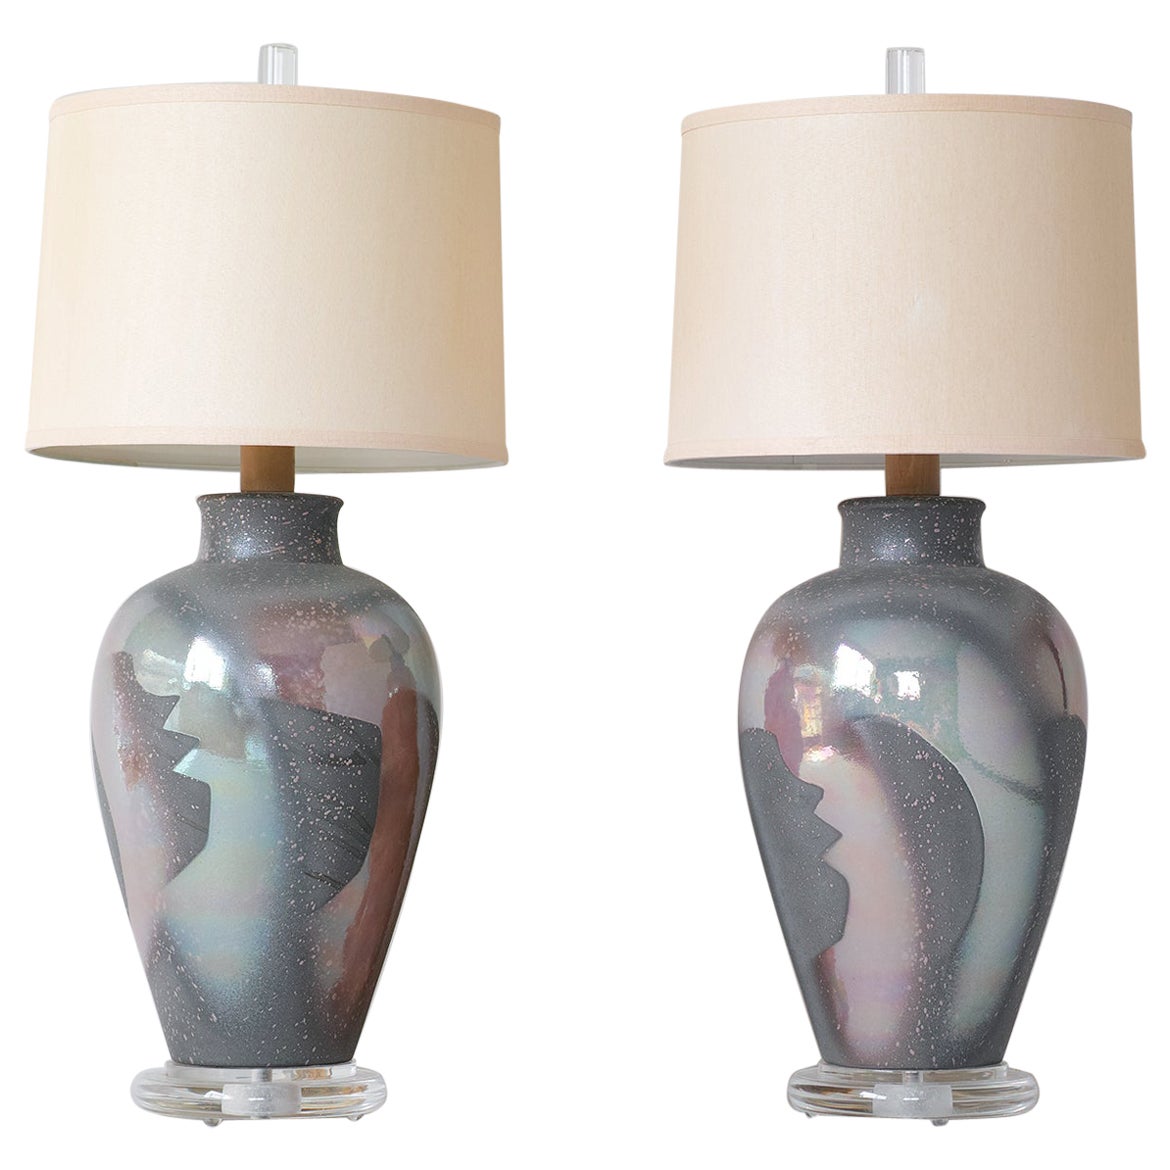 Lampes modernes en céramique et lucite des années 1980 par Casual Lamps of California